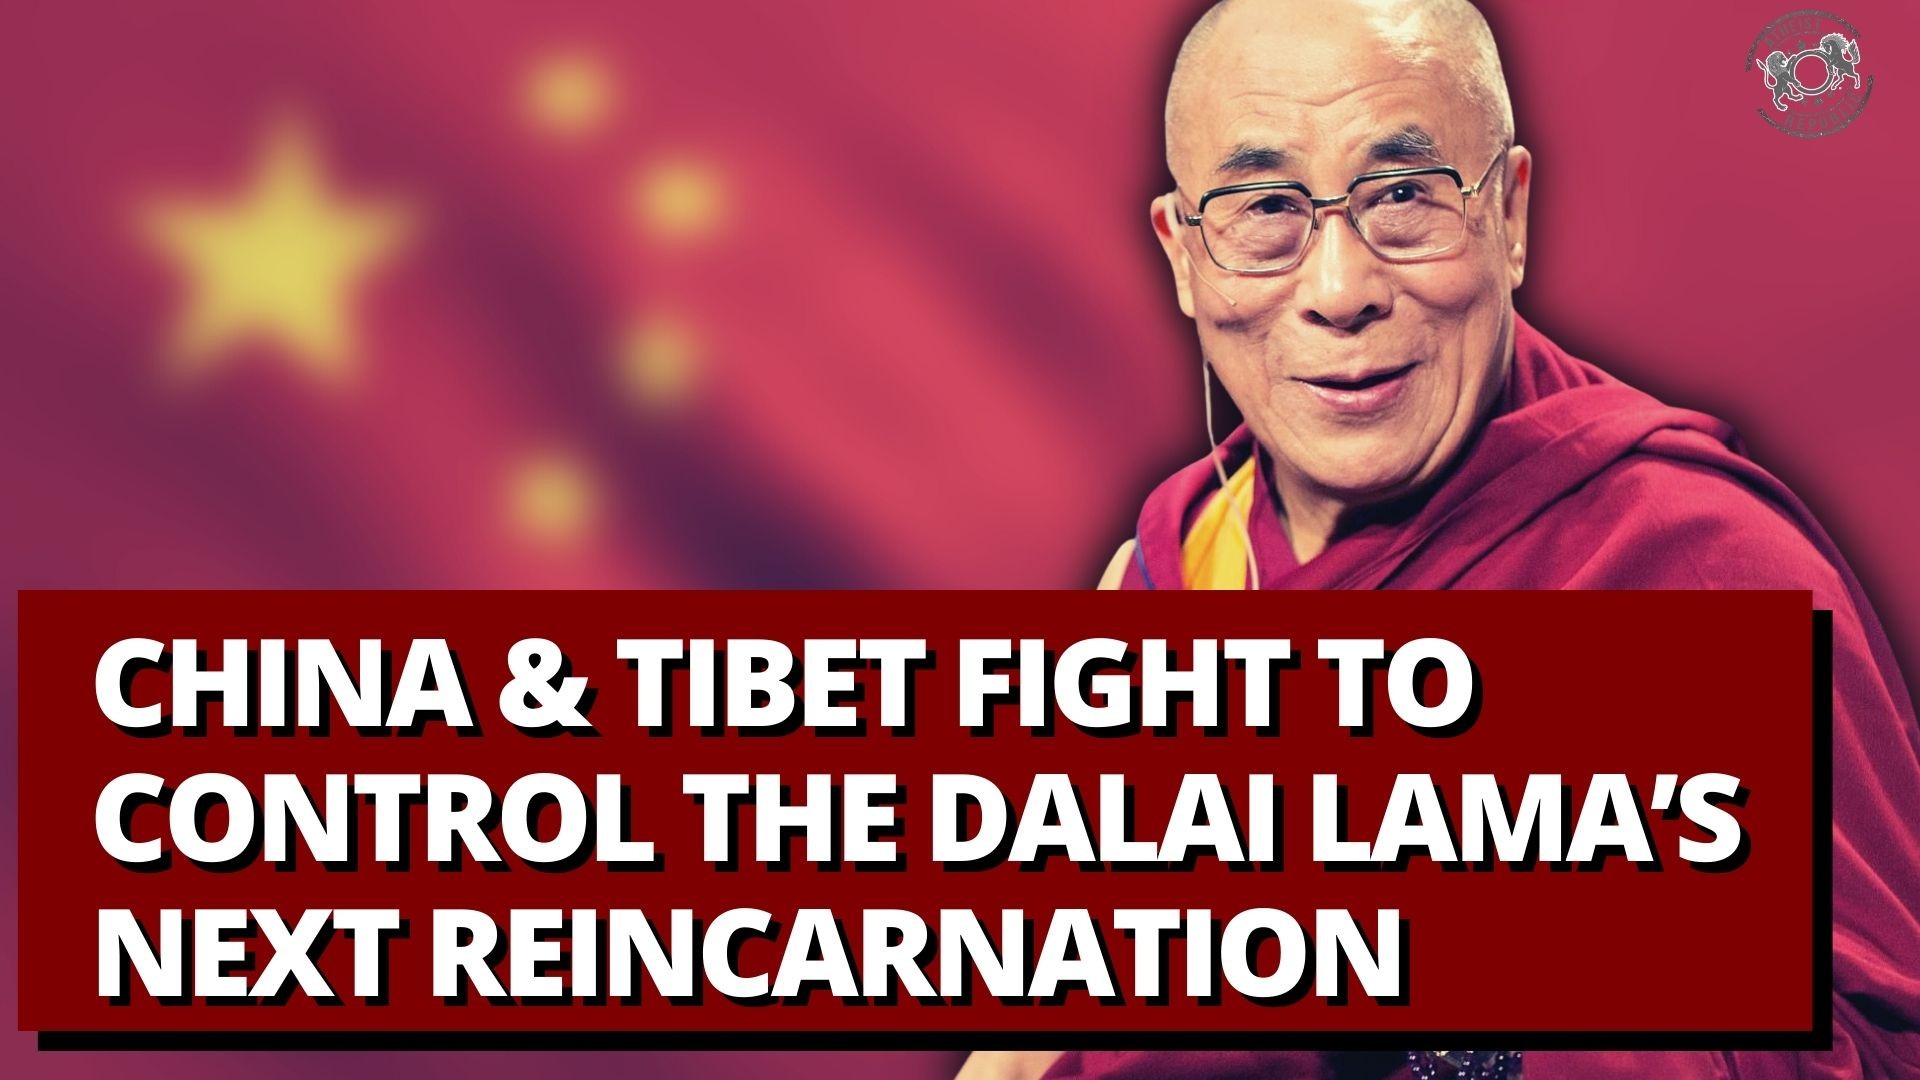 history of dalai lama reincarnation